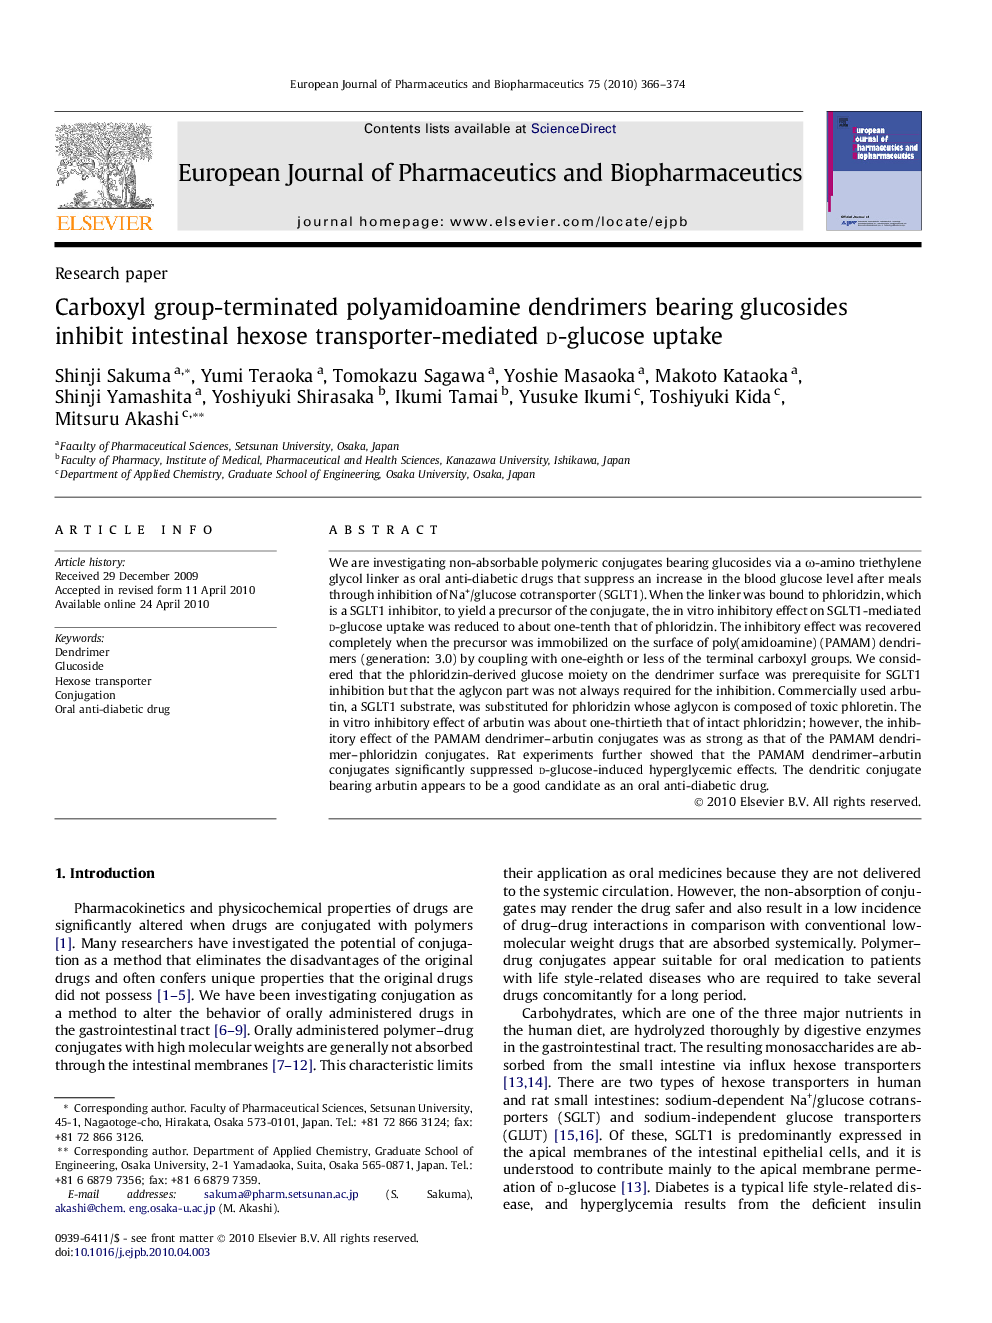 Carboxyl group-terminated polyamidoamine dendrimers bearing glucosides inhibit intestinal hexose transporter-mediated d-glucose uptake